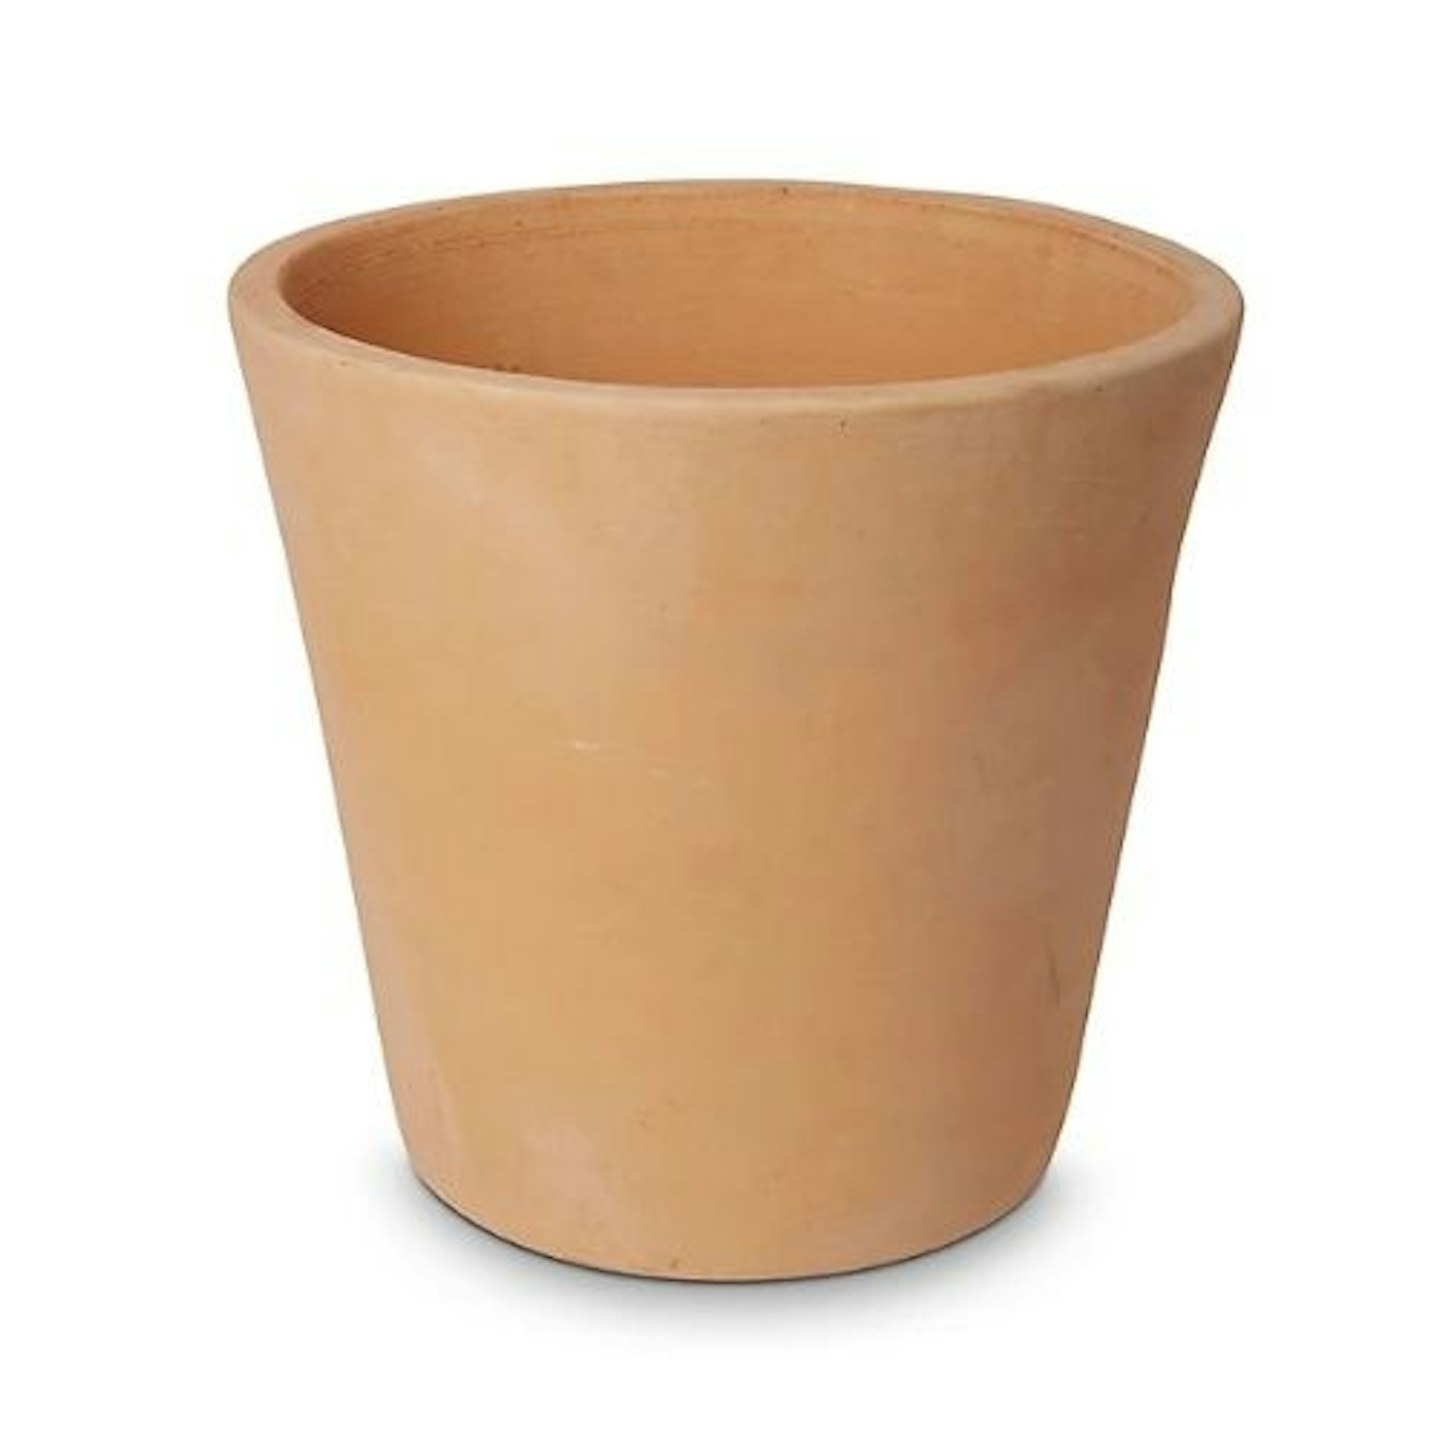 Mali White washed Terracotta Round Plant Pot - 40cm